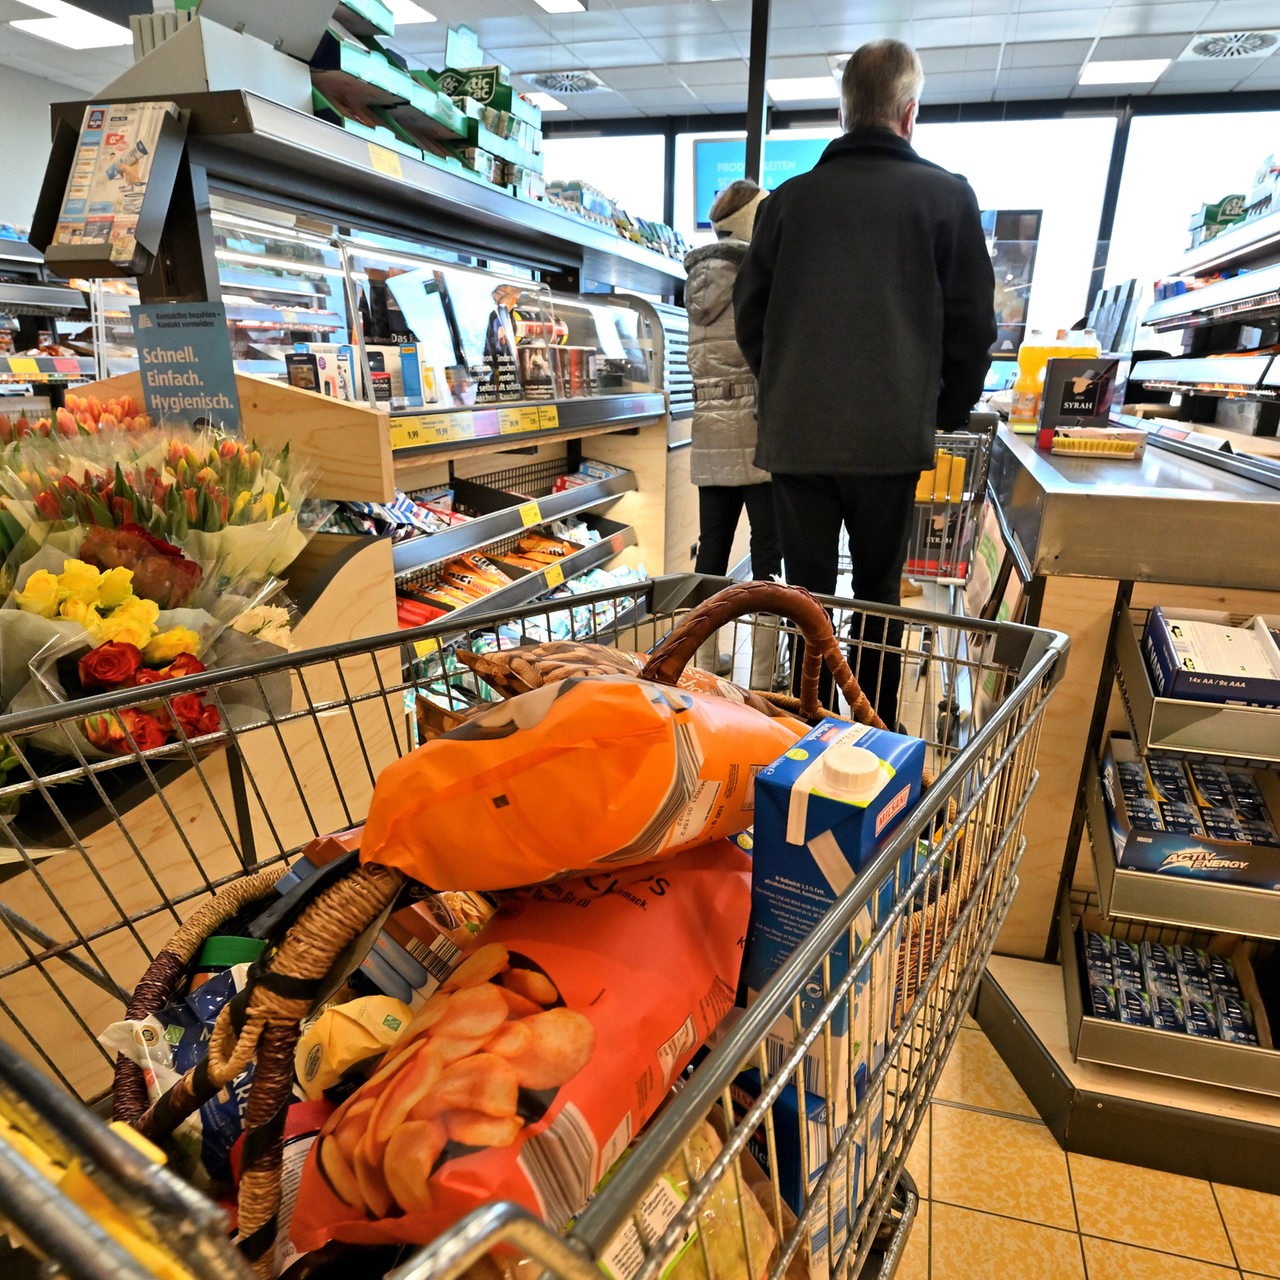 Kassenbereich in einem Supermarkt (Archivbild)